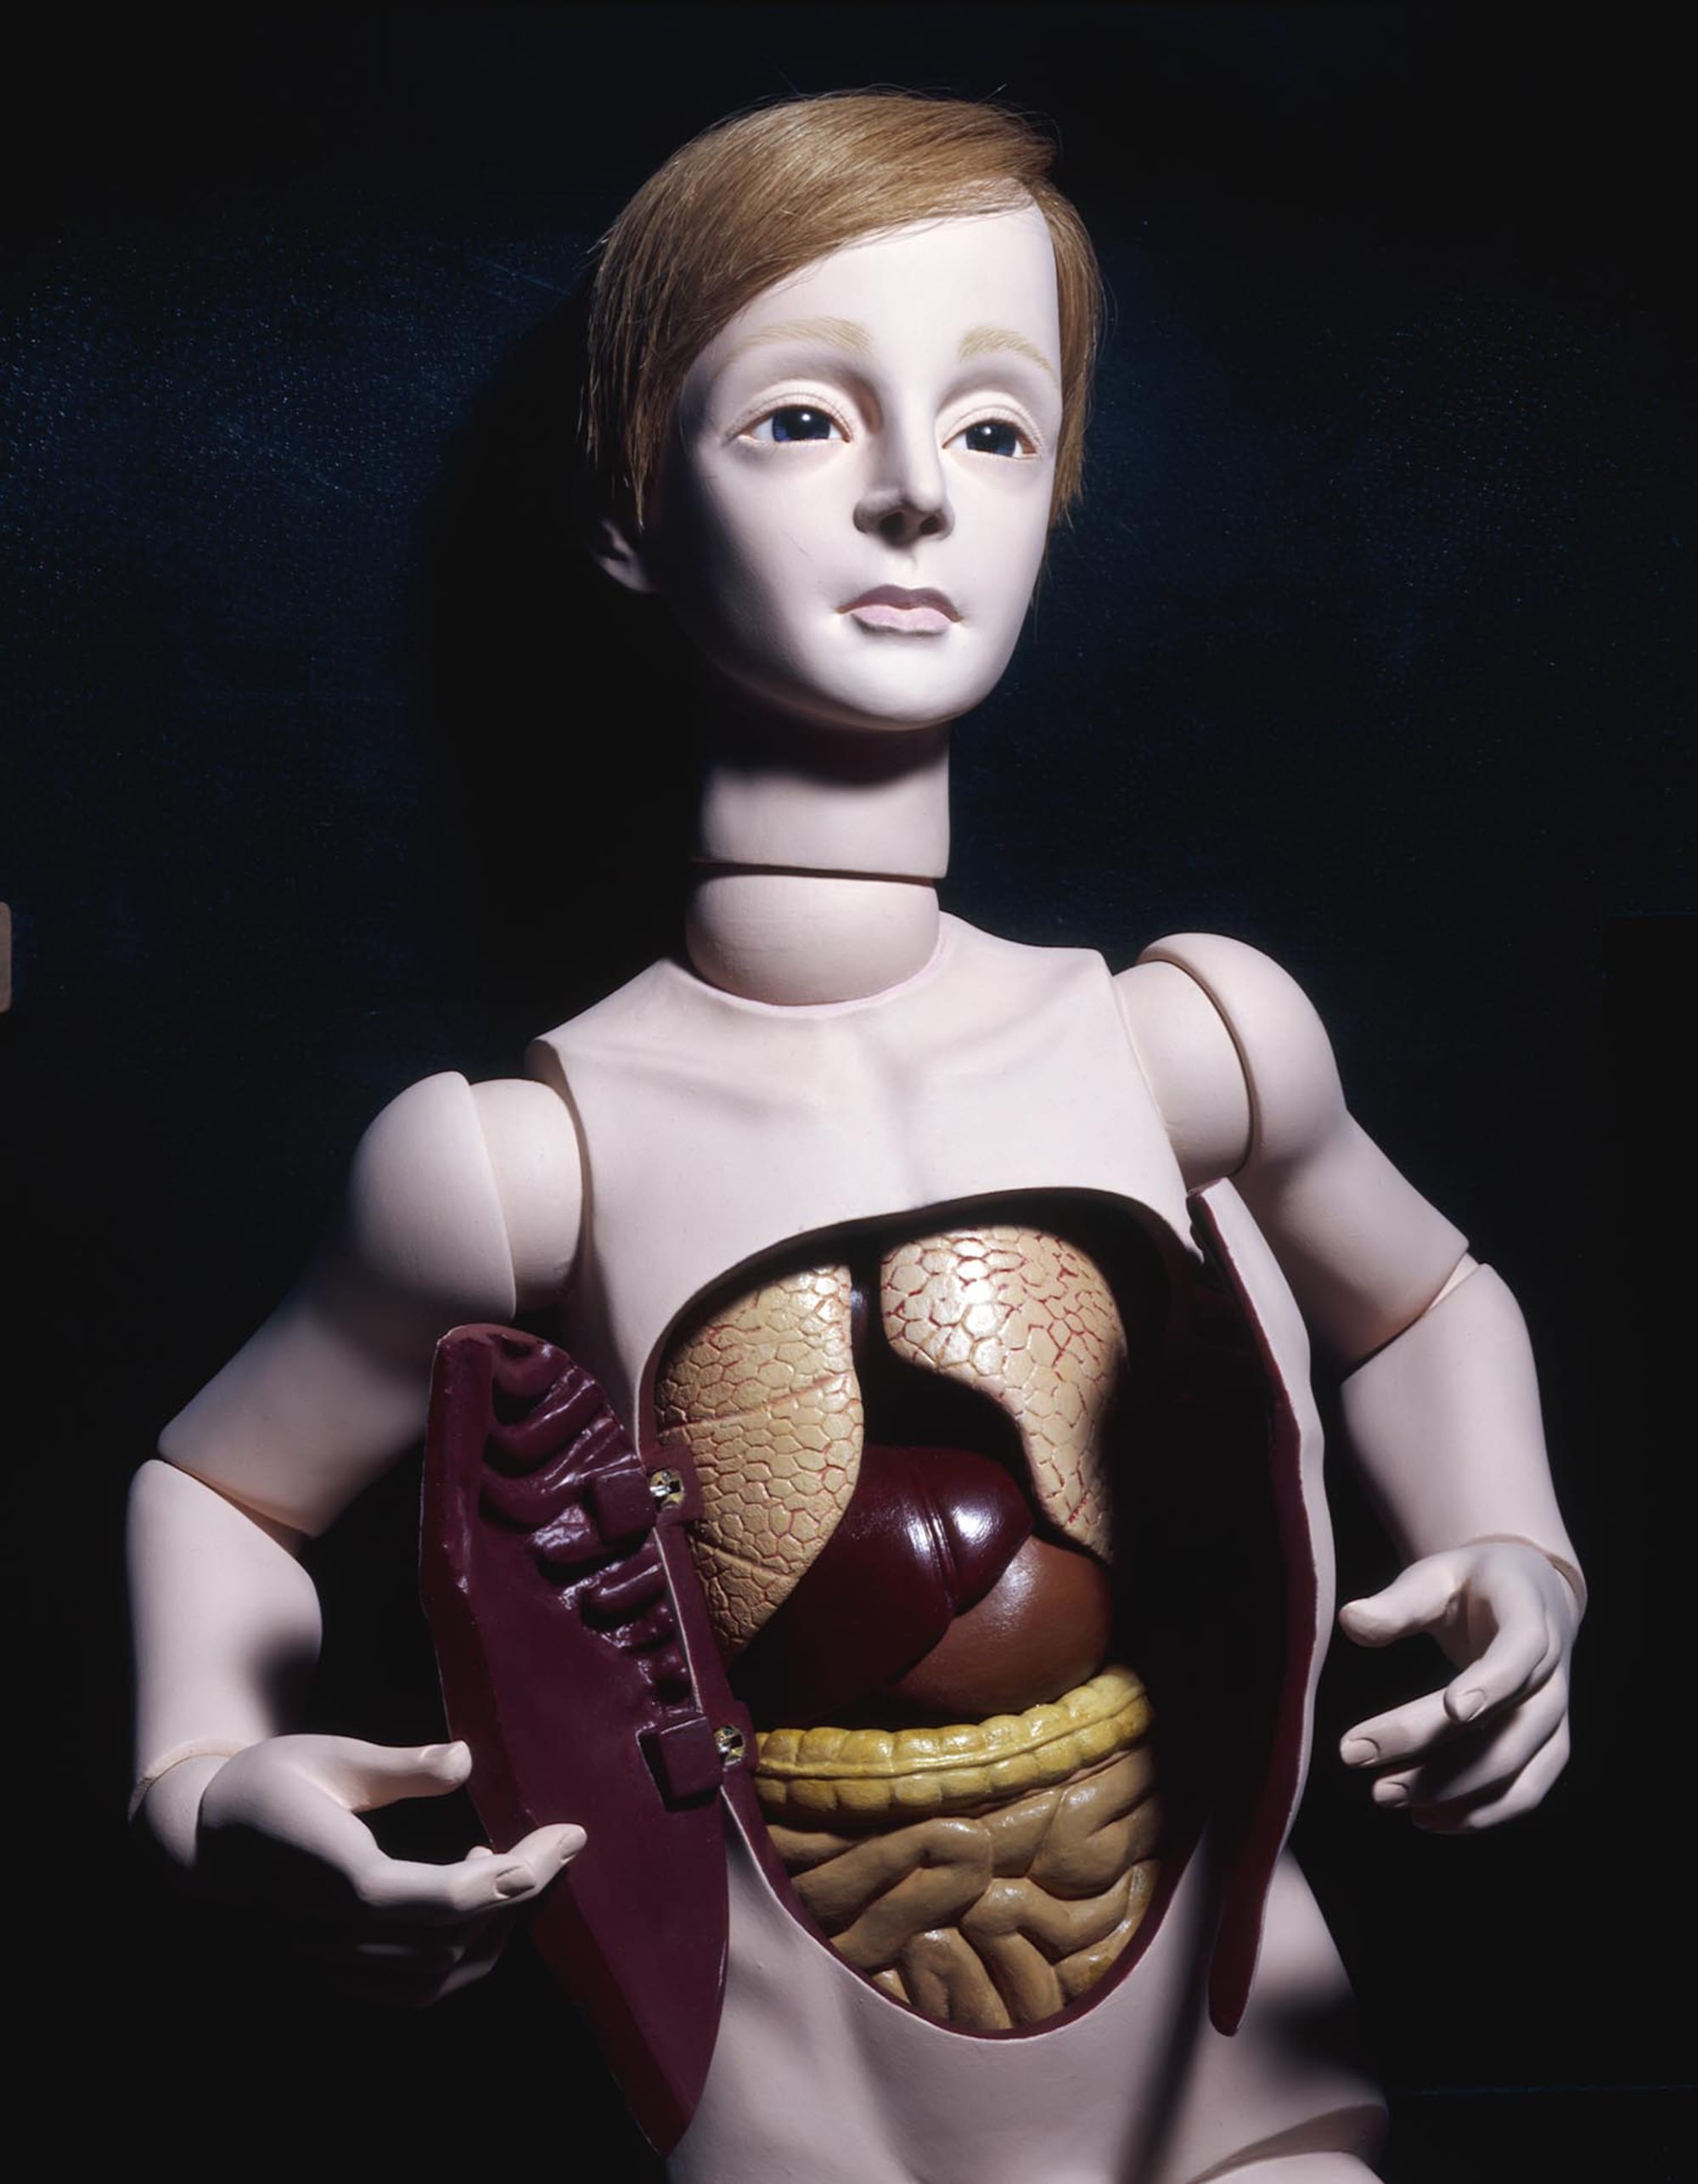 四谷シモン《解剖学の少年》1983年 大きく広げた腹部とうるんだ目のコントラストが印象的だ。